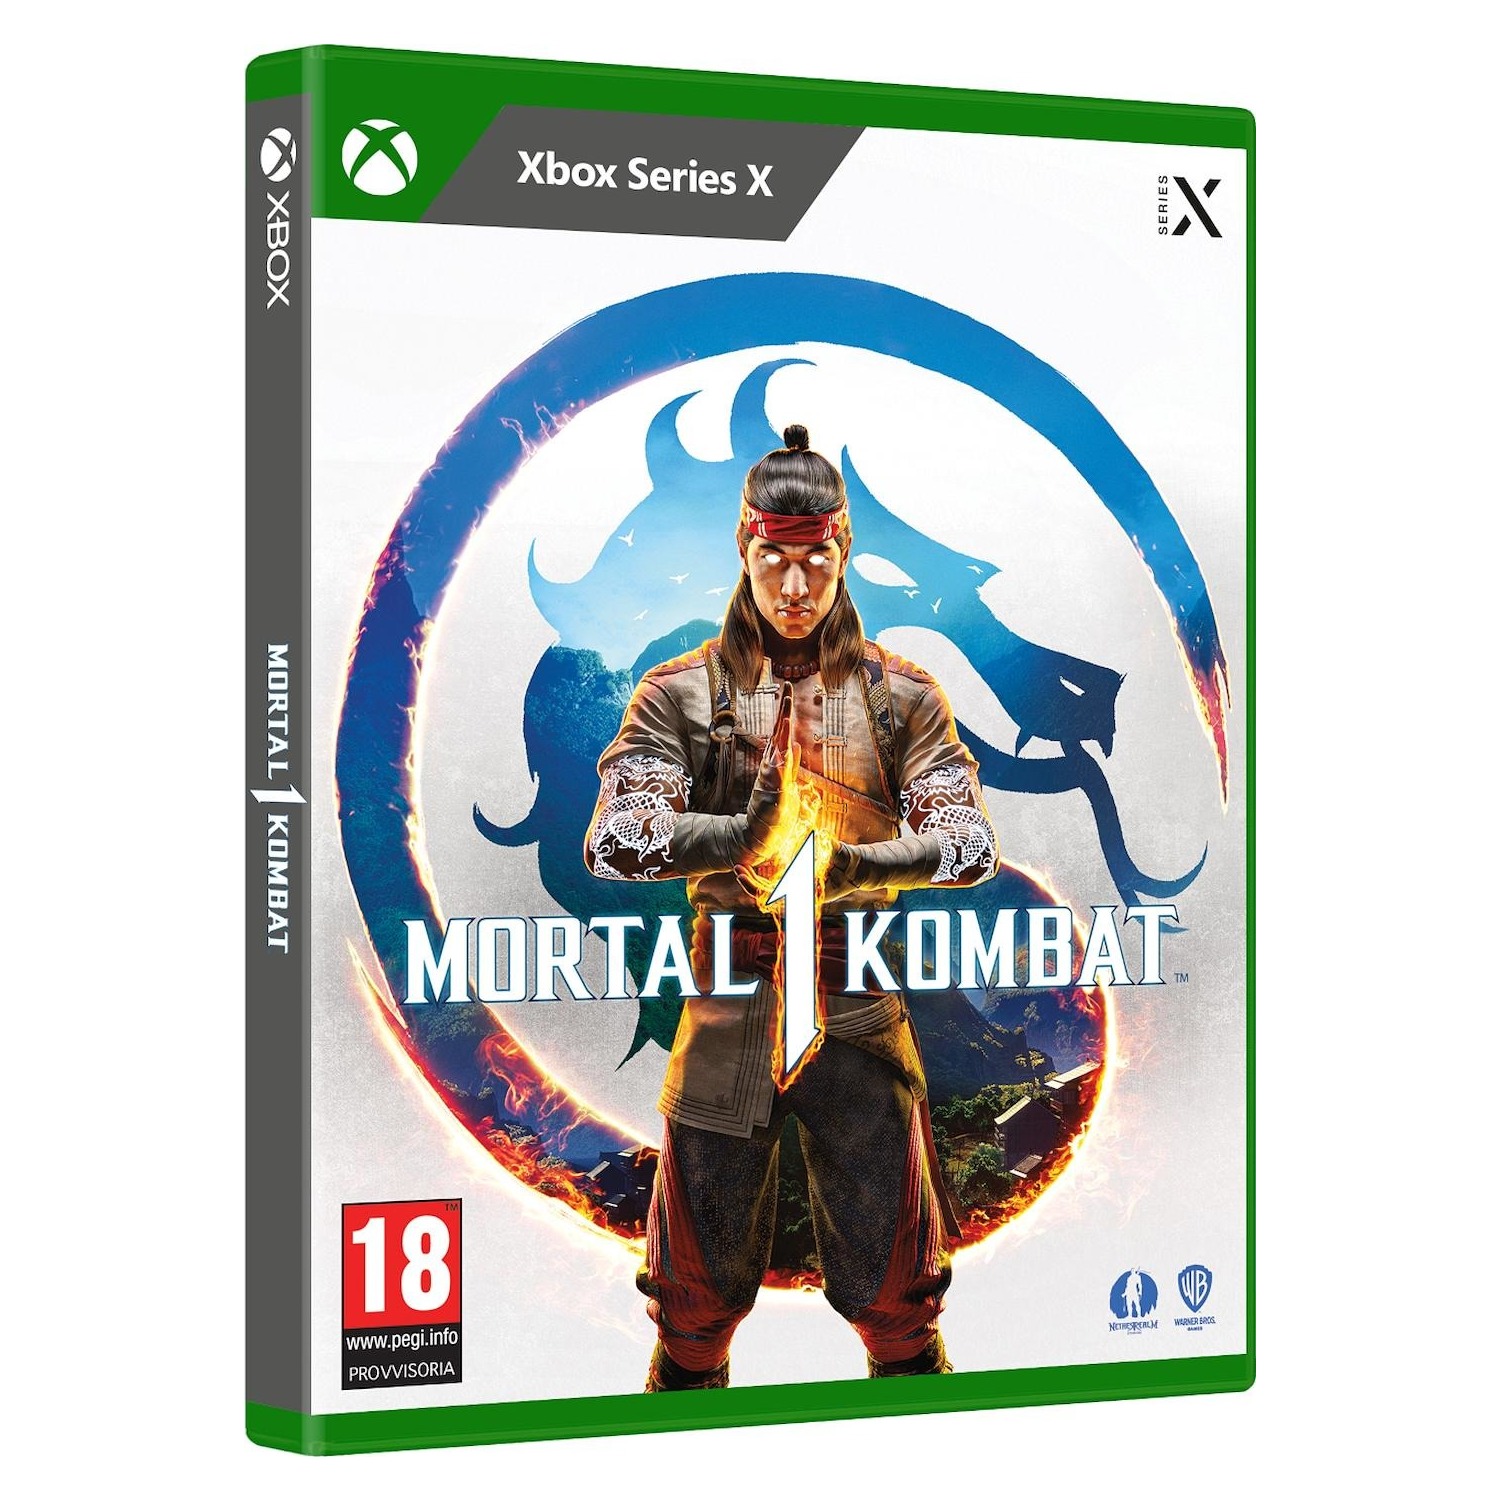 Immagine per Gioco XBOX Series X Mortal Kombat 1 da DIMOStore